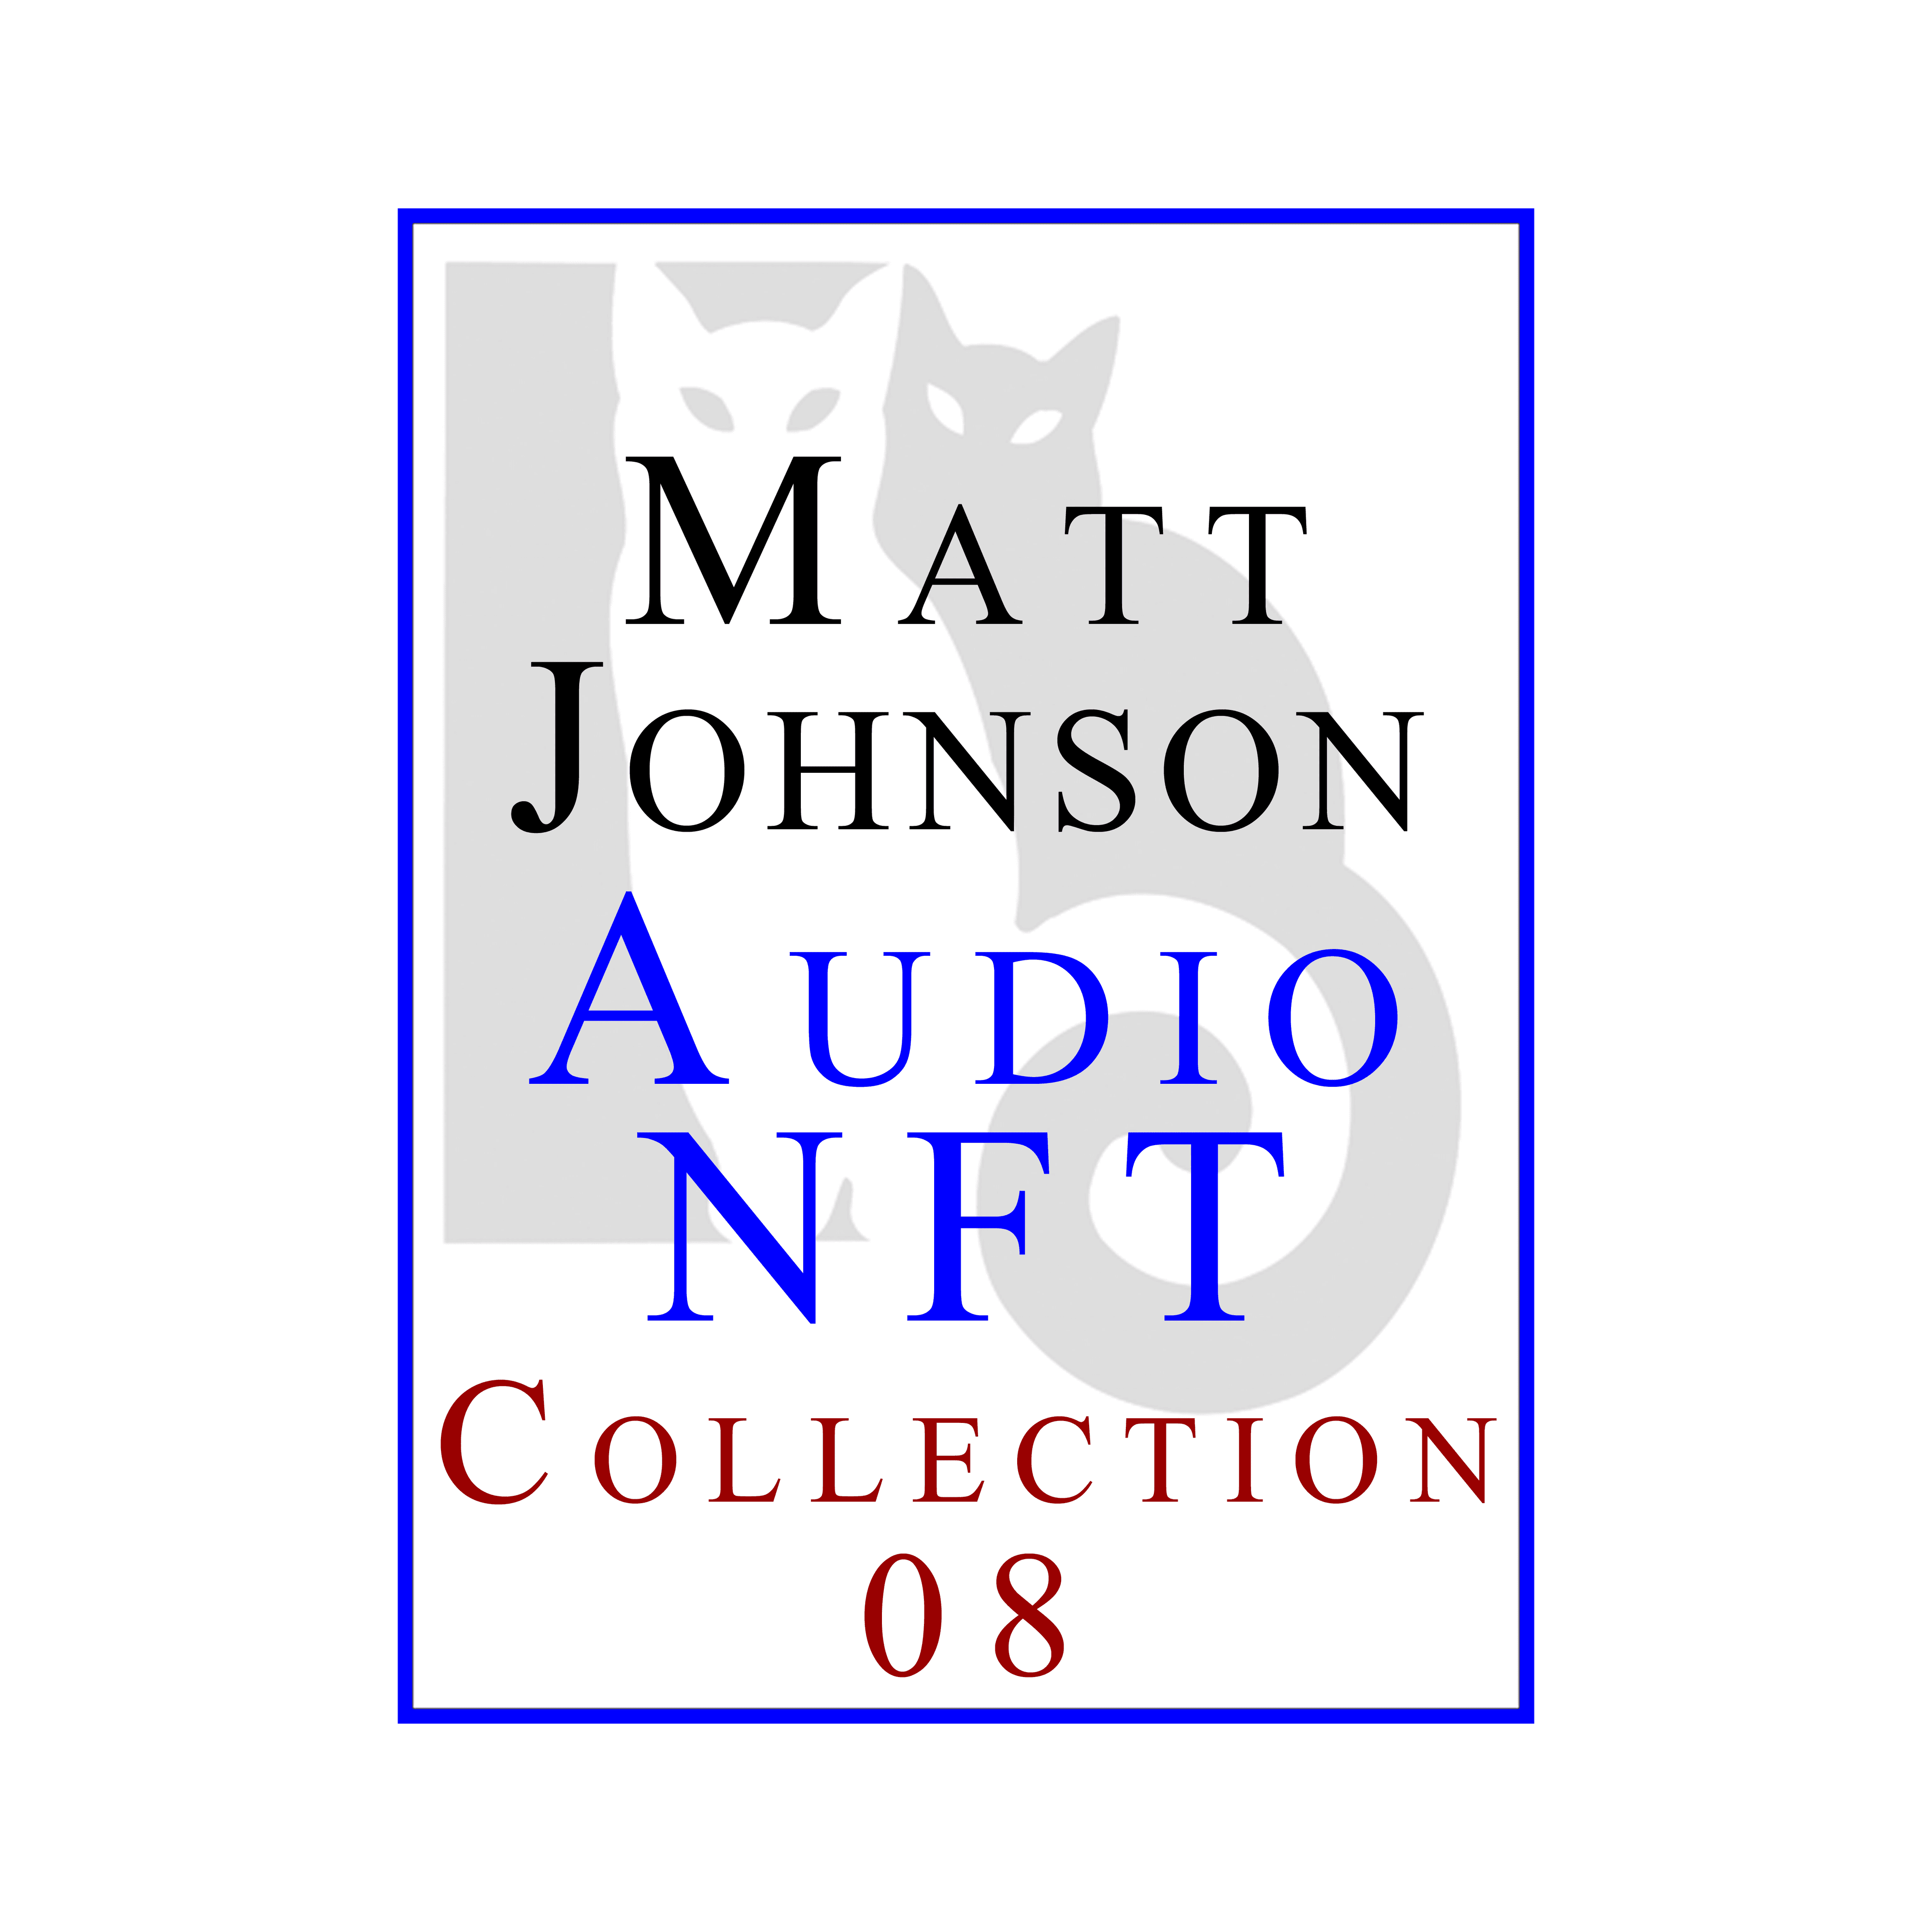 Matt Johnson Audio NFT ~ Collection 08